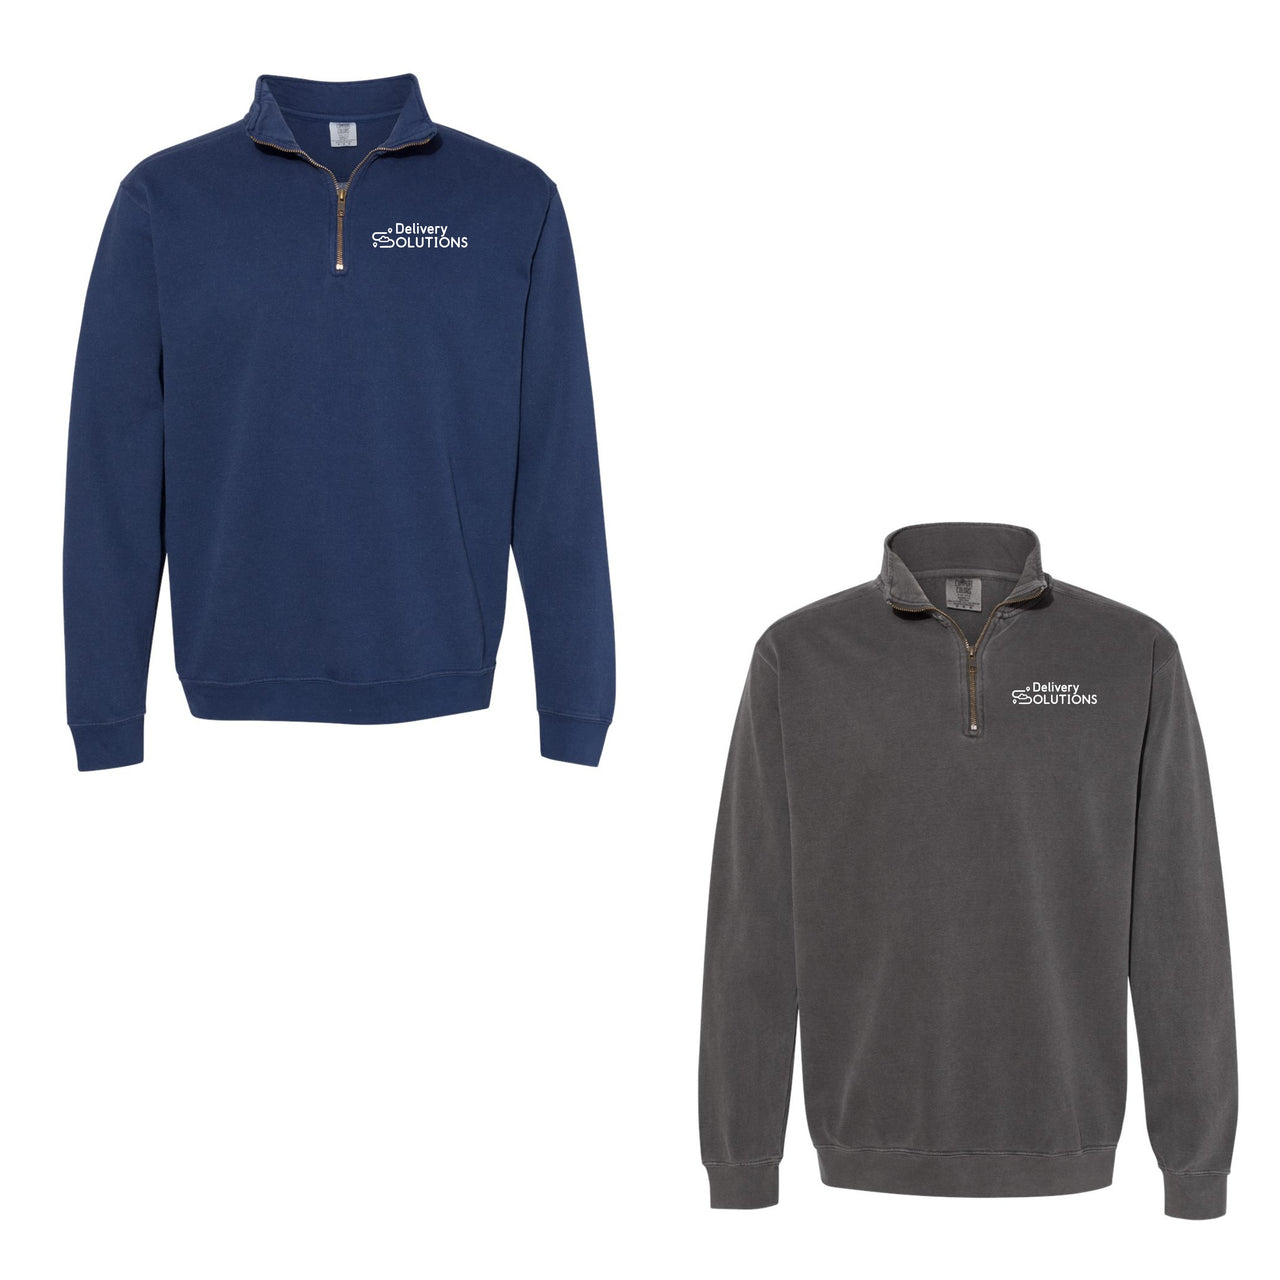 Adult - Unisex Quarter Zip Sweatshirt - Comfort Colors (Delivery Solutions)